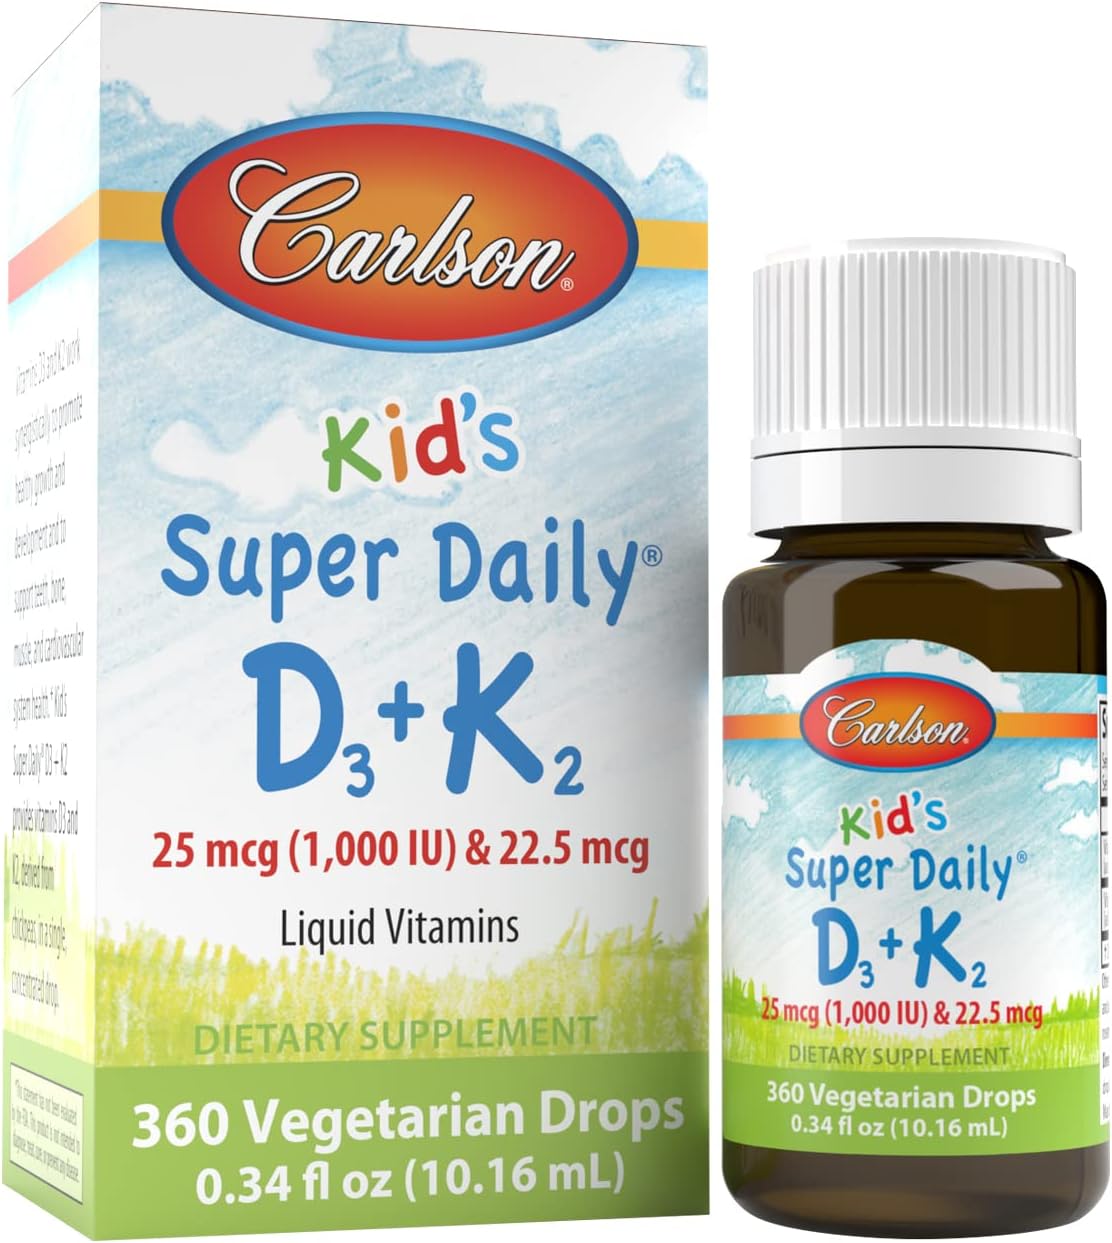 Carlson - Kid's Super Daily D3+K2, 25 mcg (1,000 IU) D3 & 22.5 mcg K2,